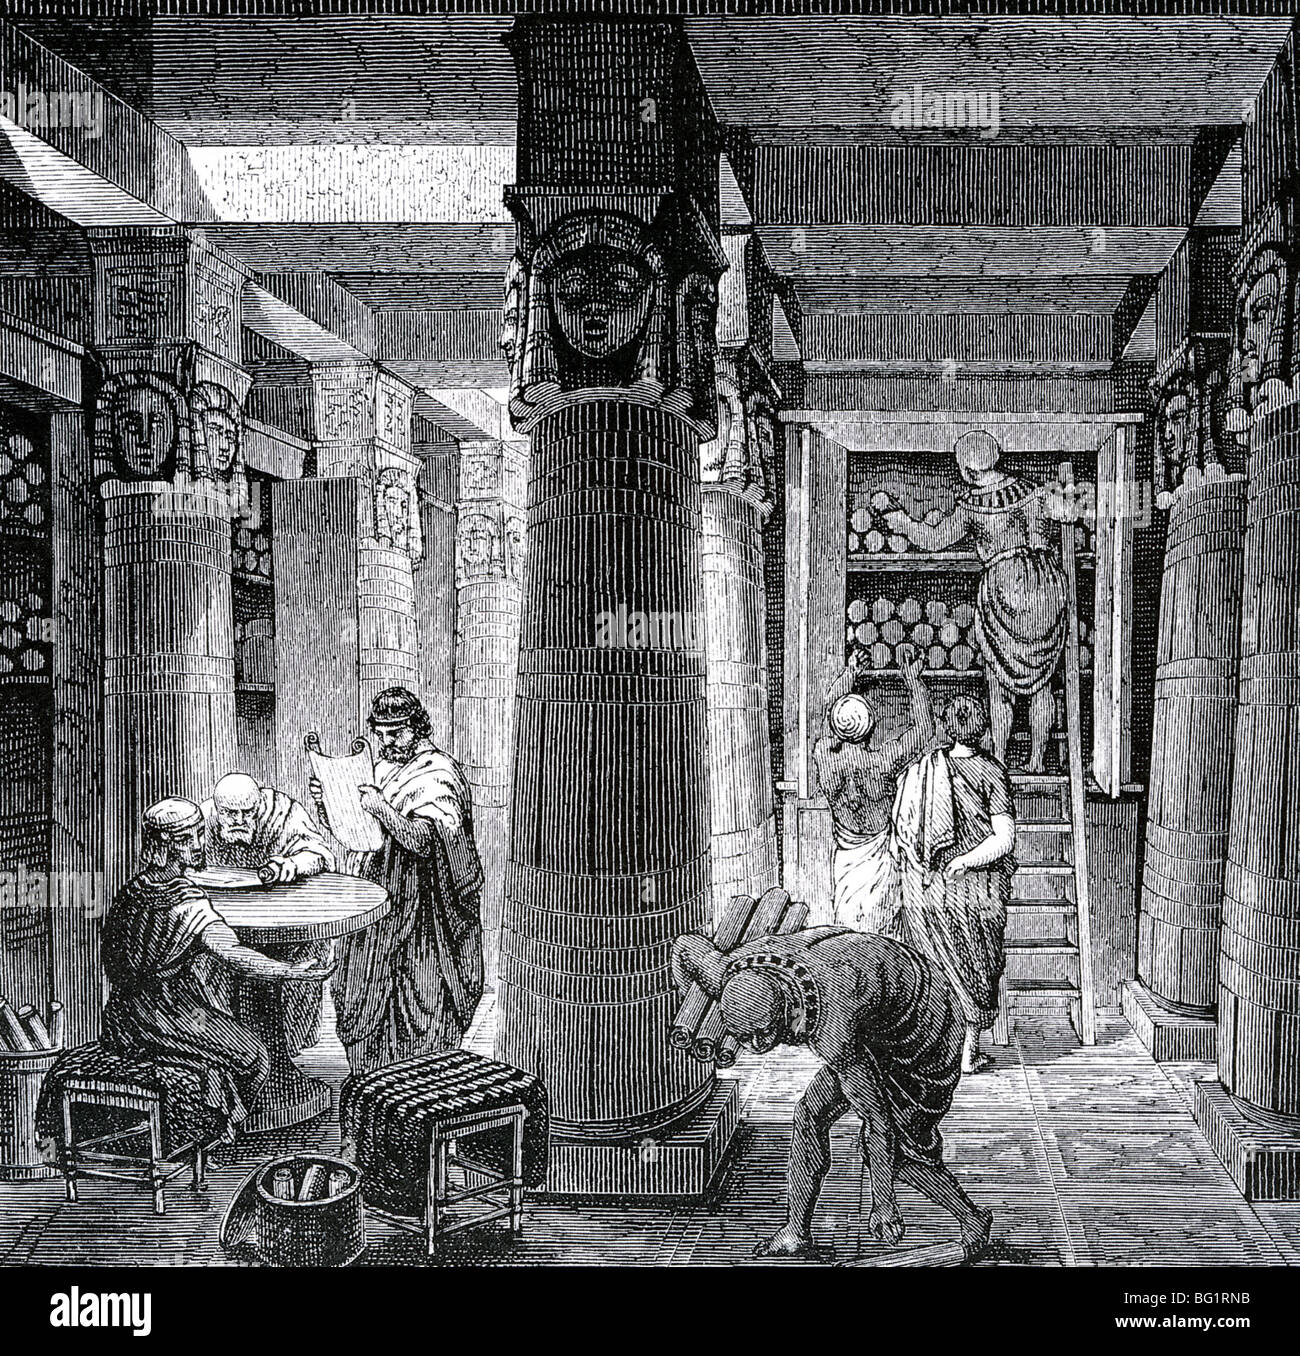 Bibliothèque À Alexandrie imaginés dans une gravure du xixe siècle Banque D'Images